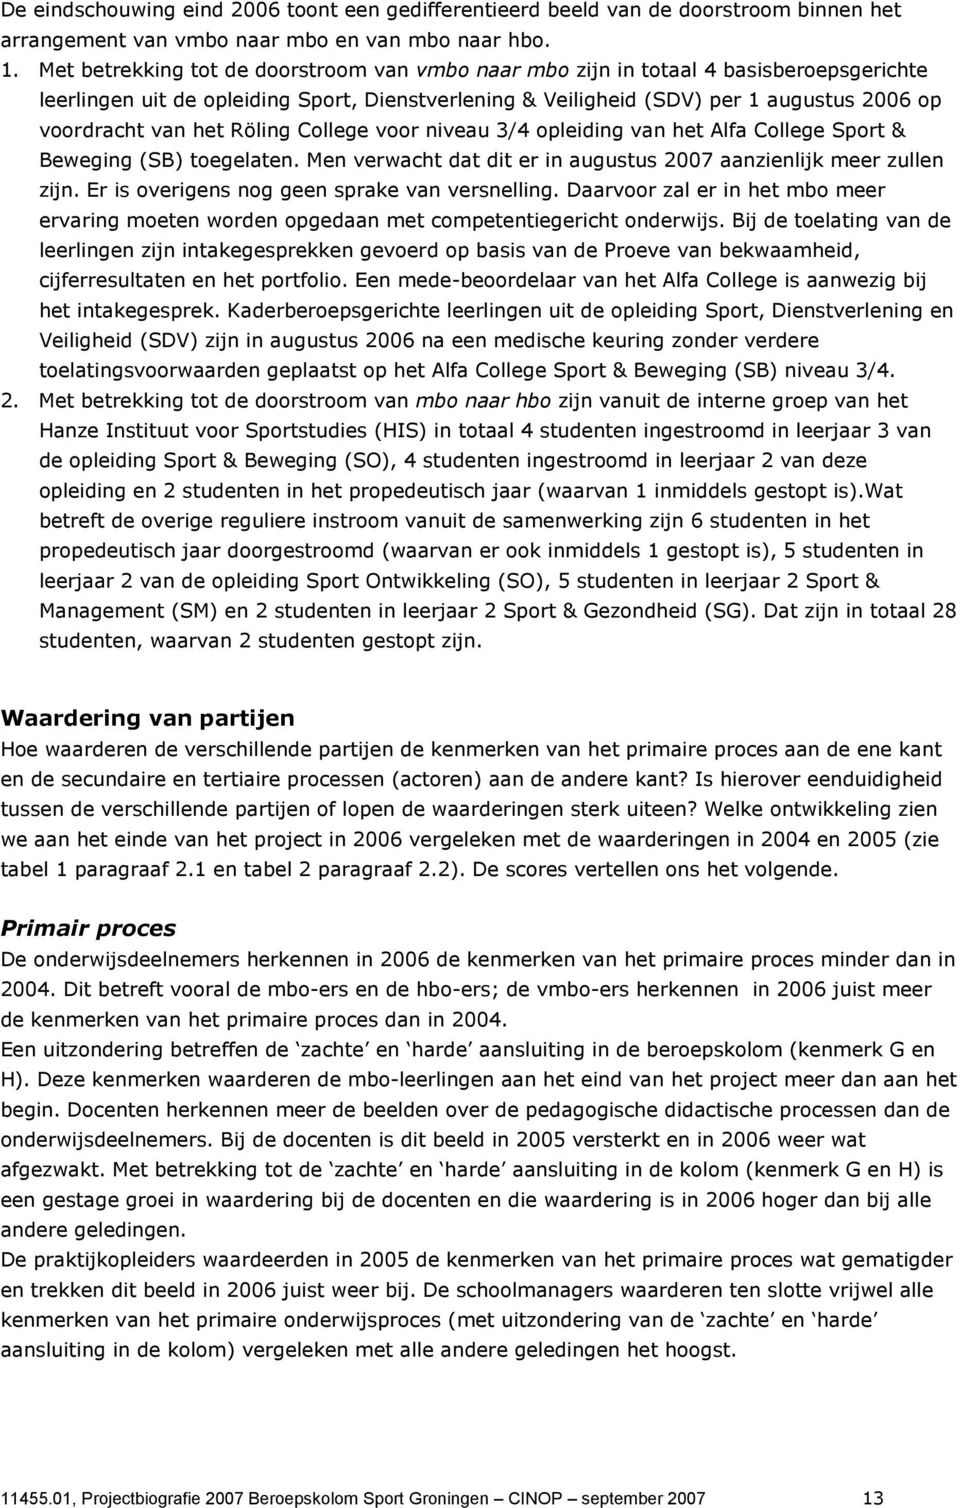 het Röling College voor niveau 3/4 opleiding van het Alfa College Sport & Beweging (SB) toegelaten. Men verwacht dat dit er in augustus 2007 aanzienlijk meer zullen zijn.